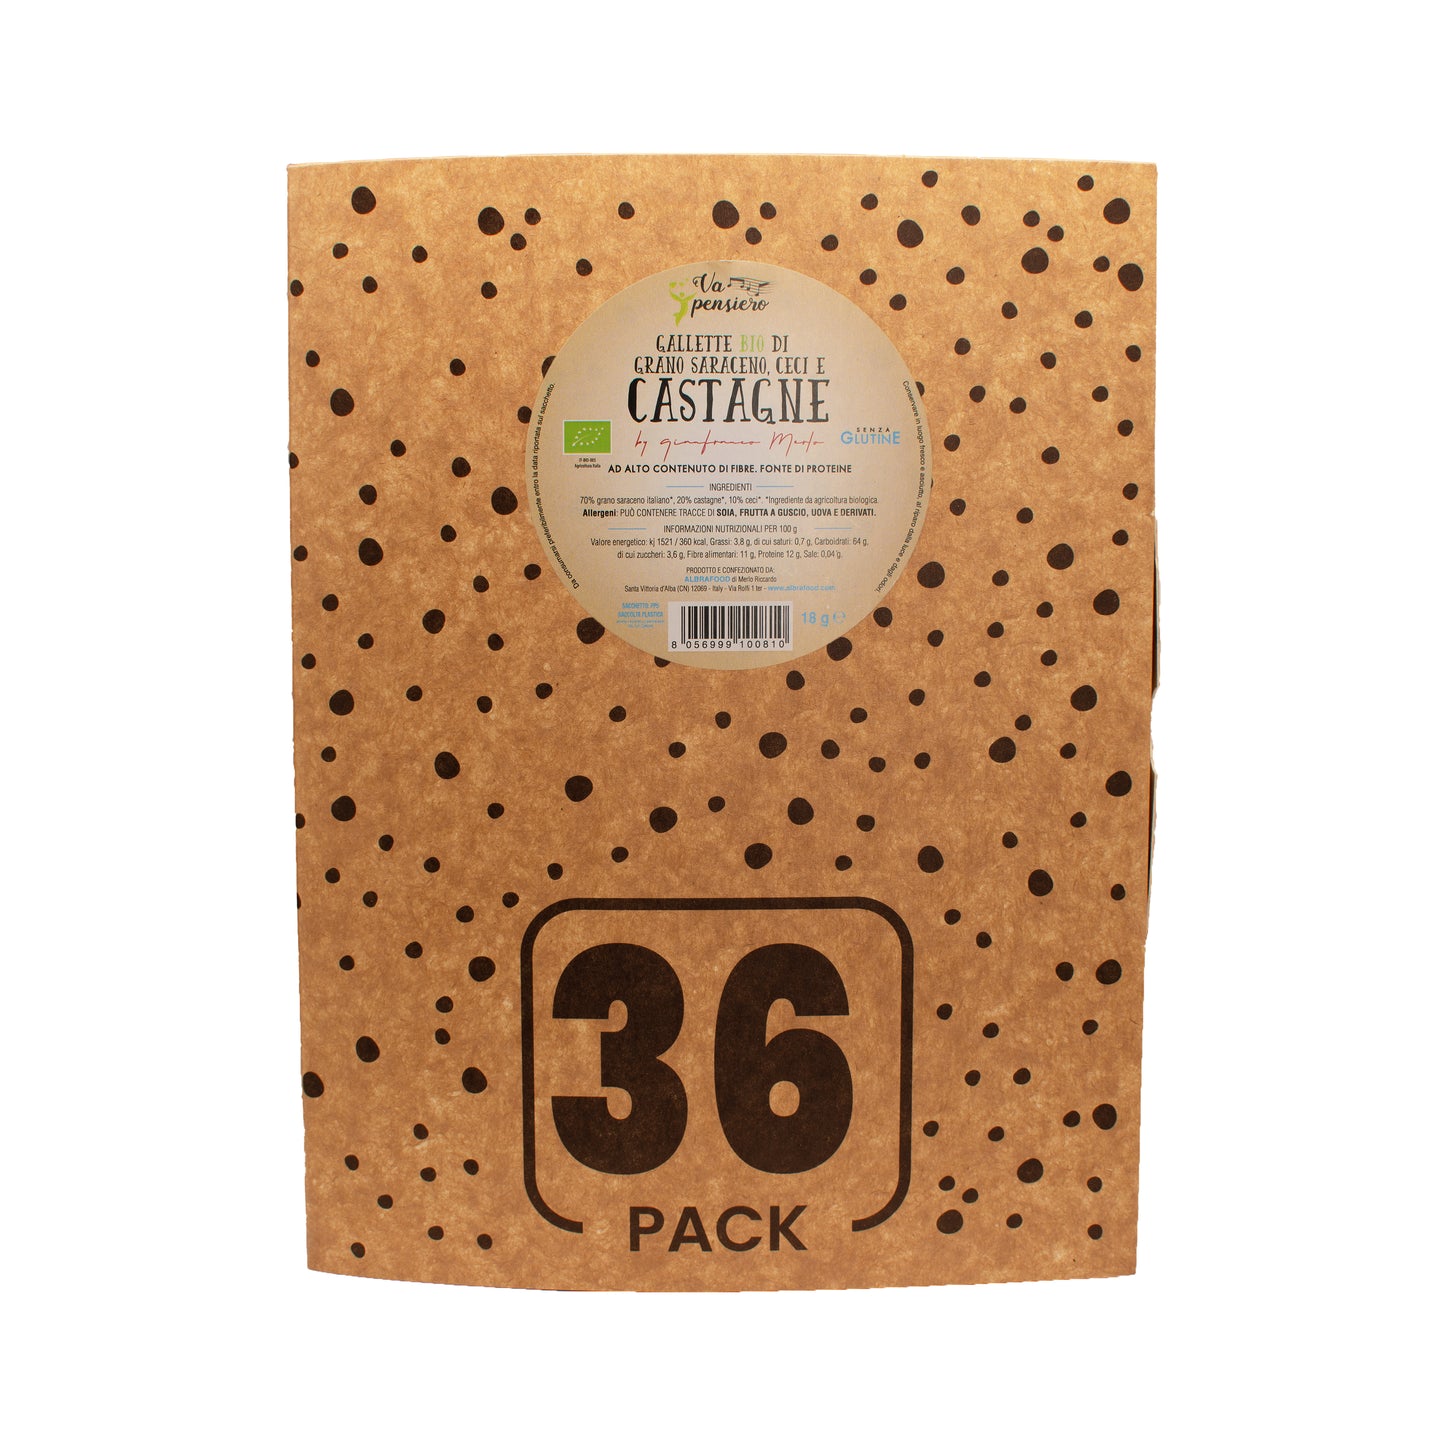 Gallette Bio di grano saraceno italiano, ceci e castagne - Box 36Pack